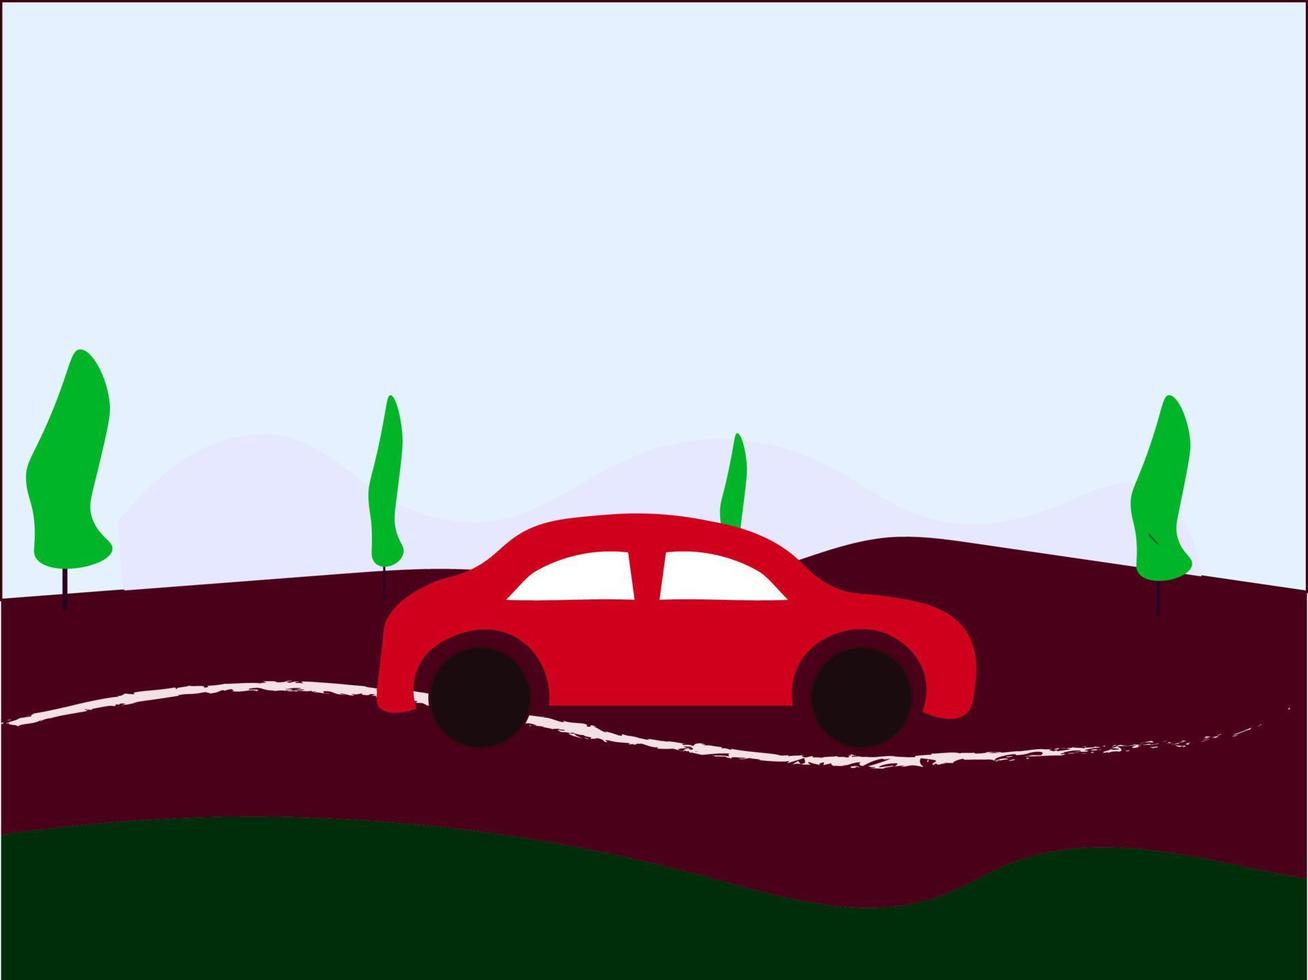 coche en la carretera, ilustración, vector sobre fondo blanco.